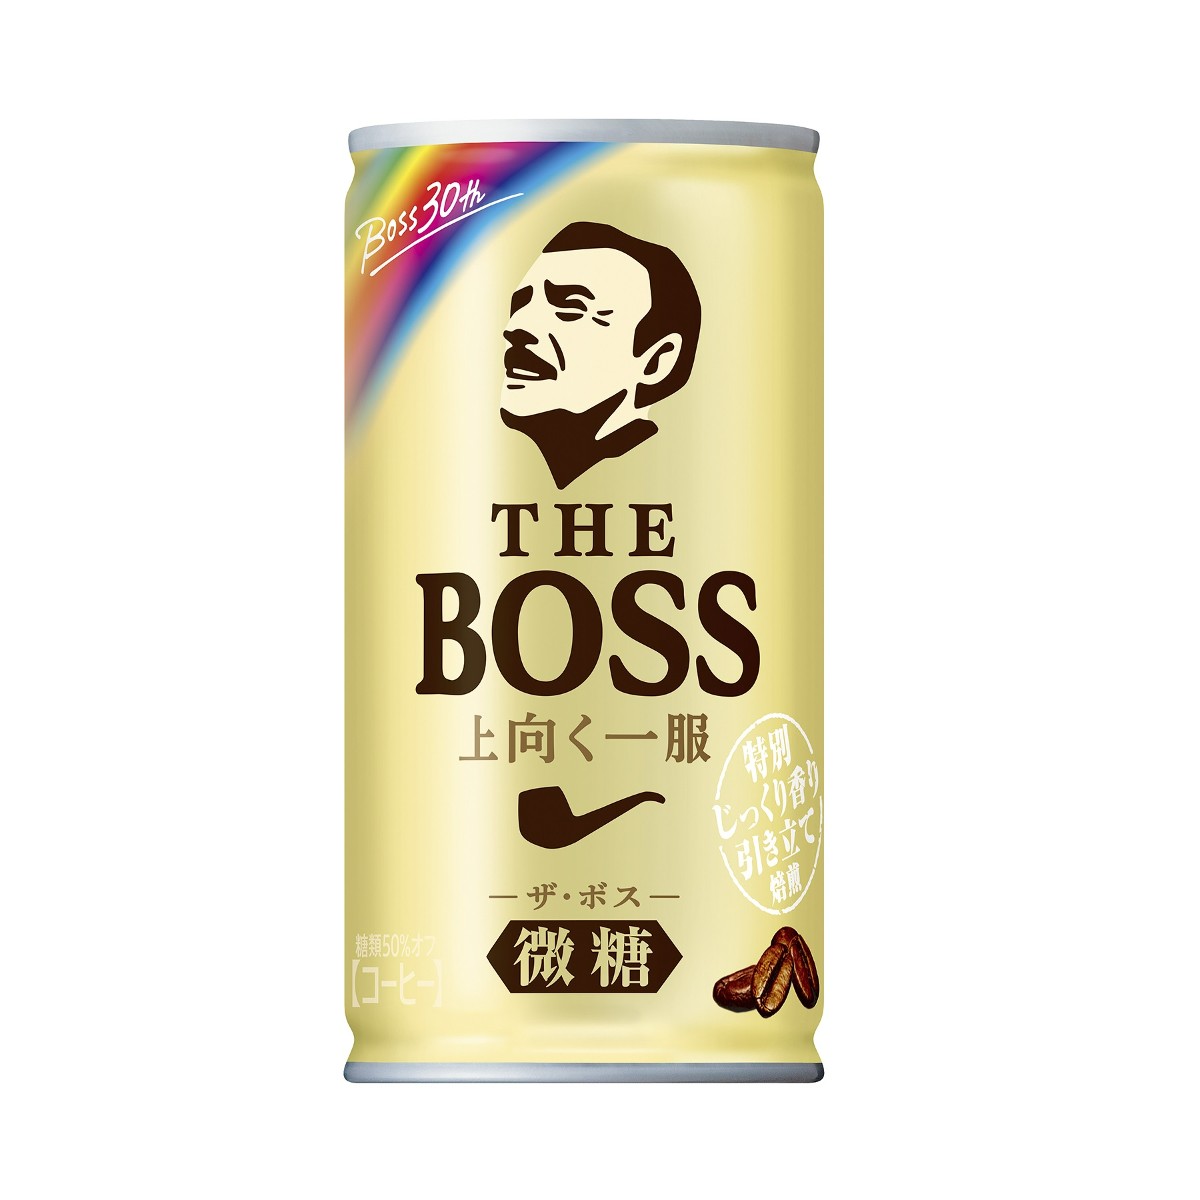 サントリー、「BOSS」30周年記念で新商品発売 「ボス レインボー